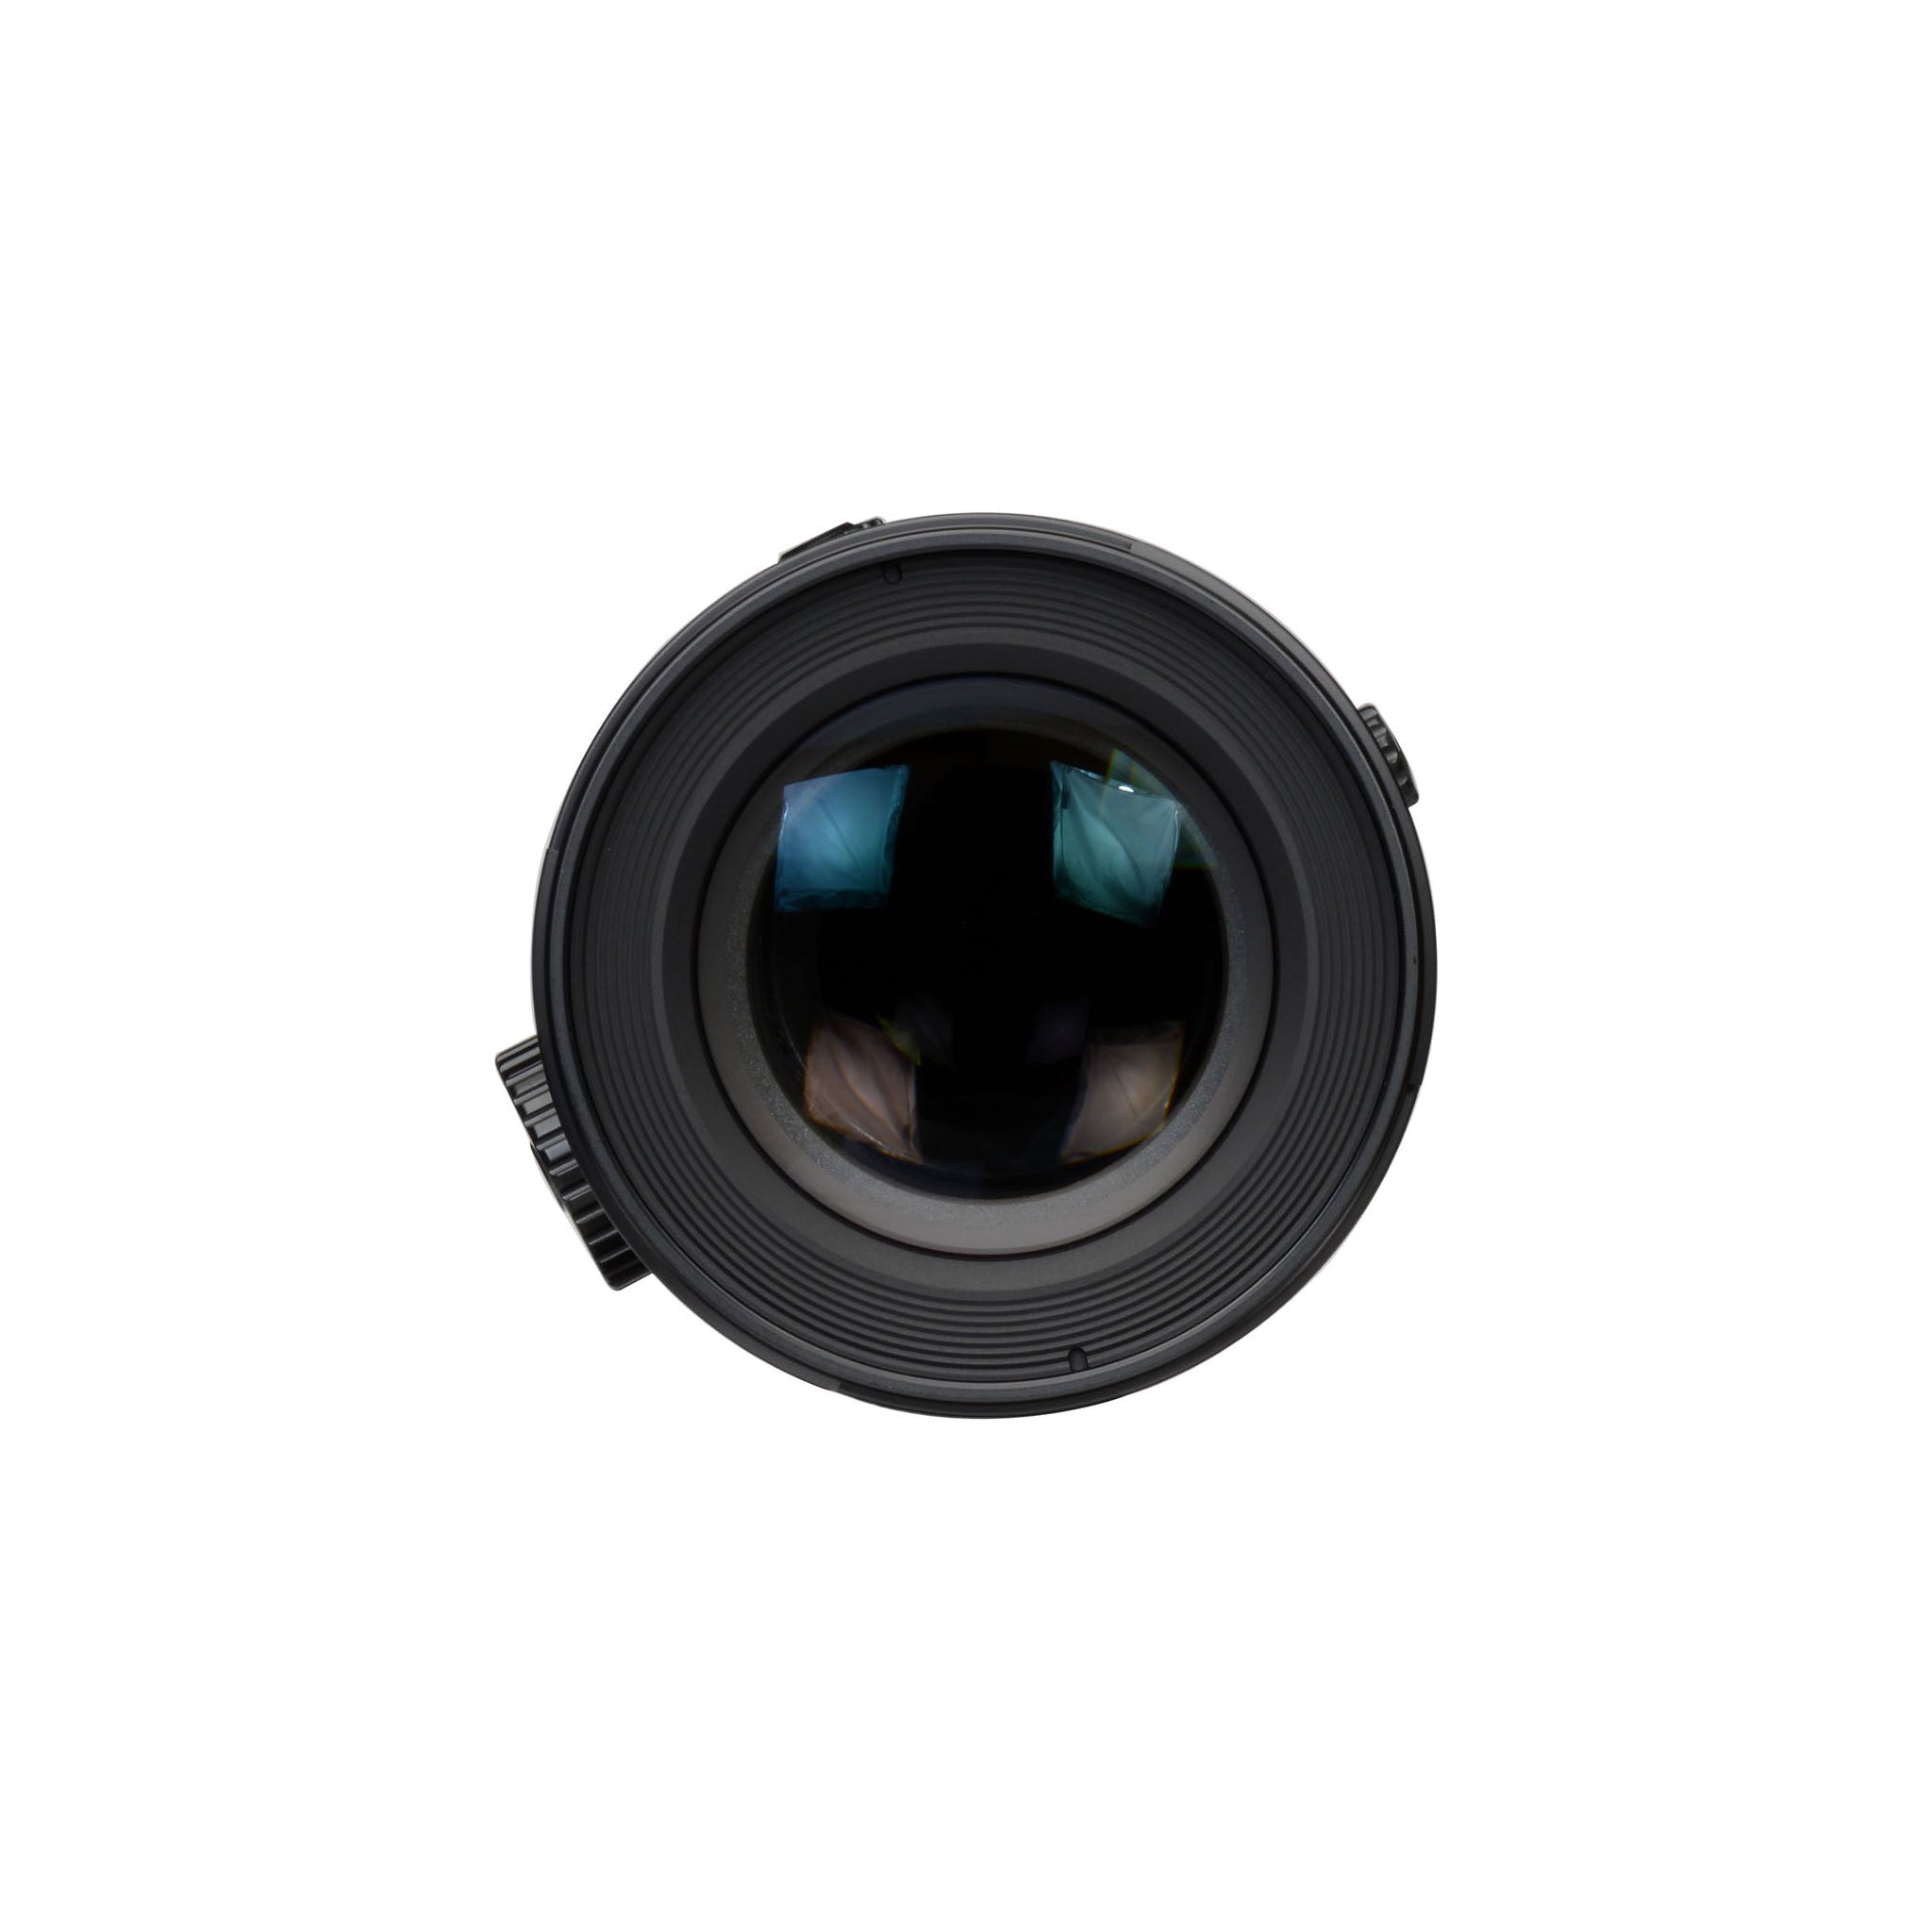 Canon TS-E 135mm F4L Macro Lens